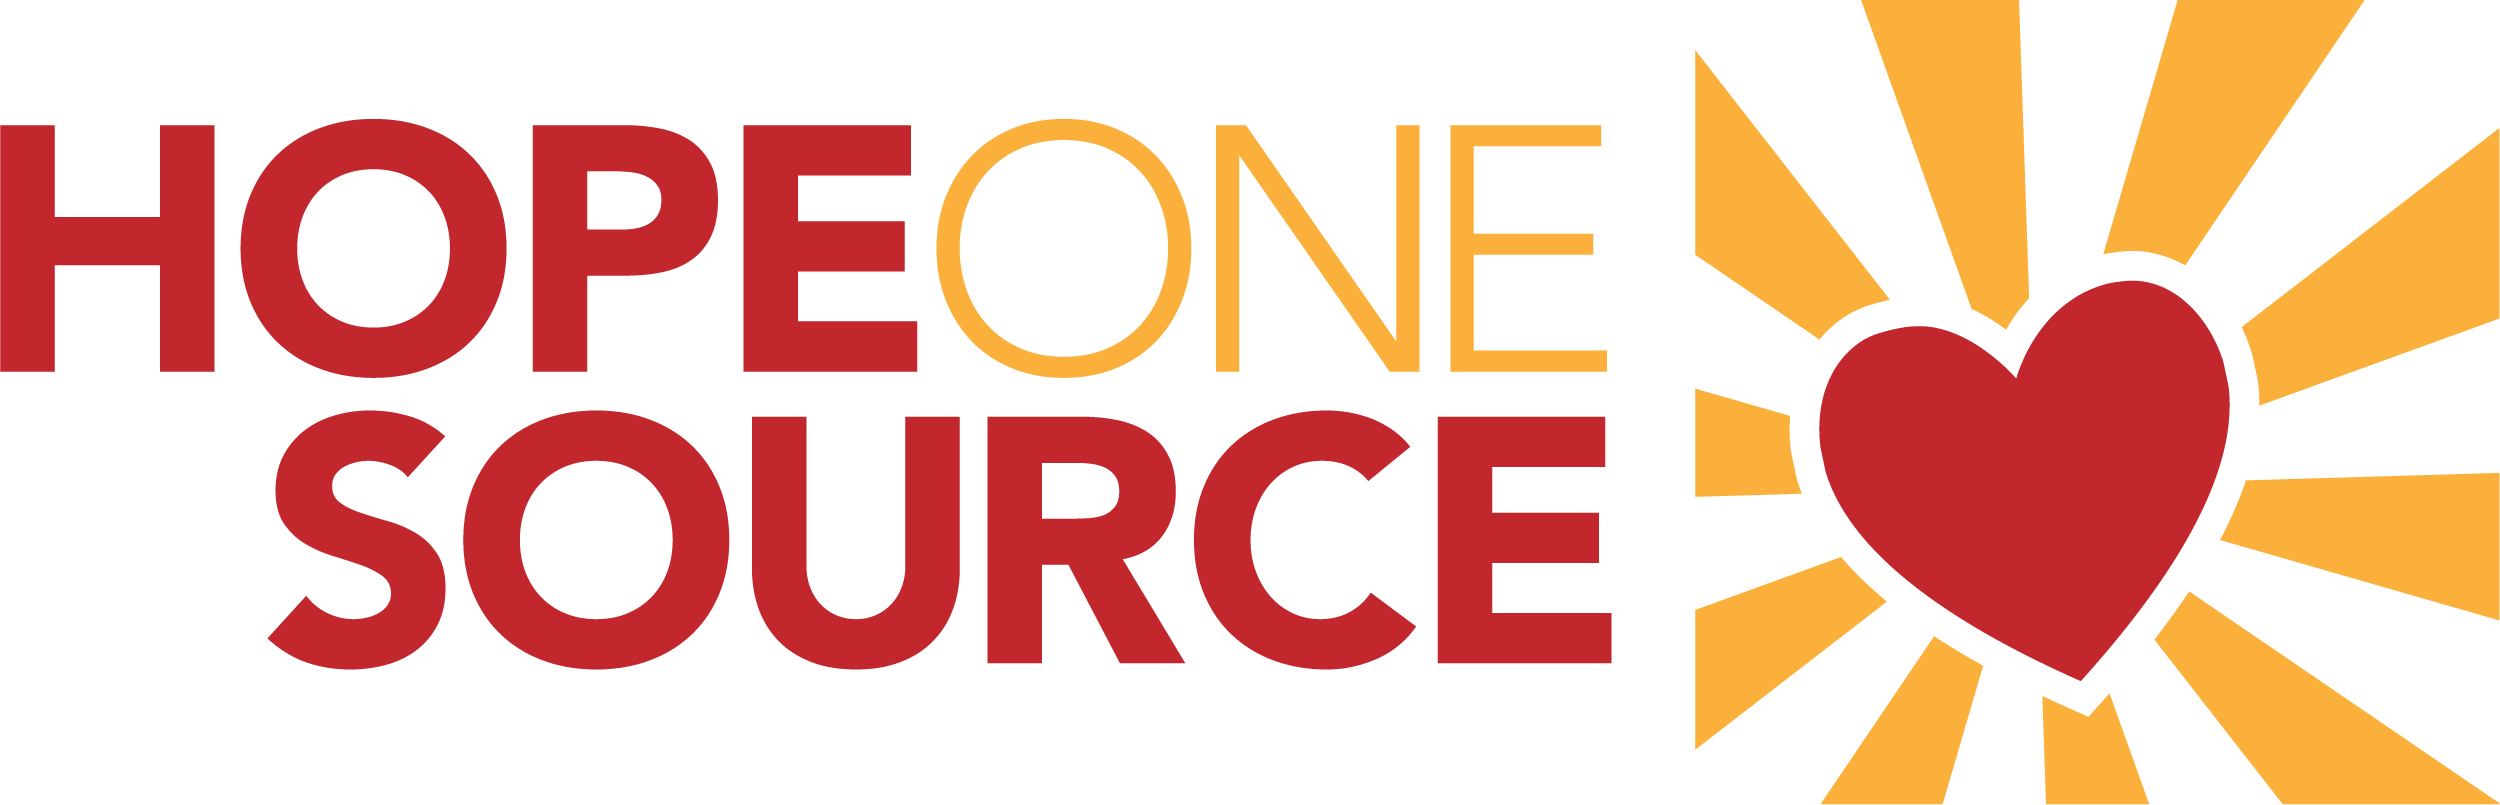 HopeOneSource